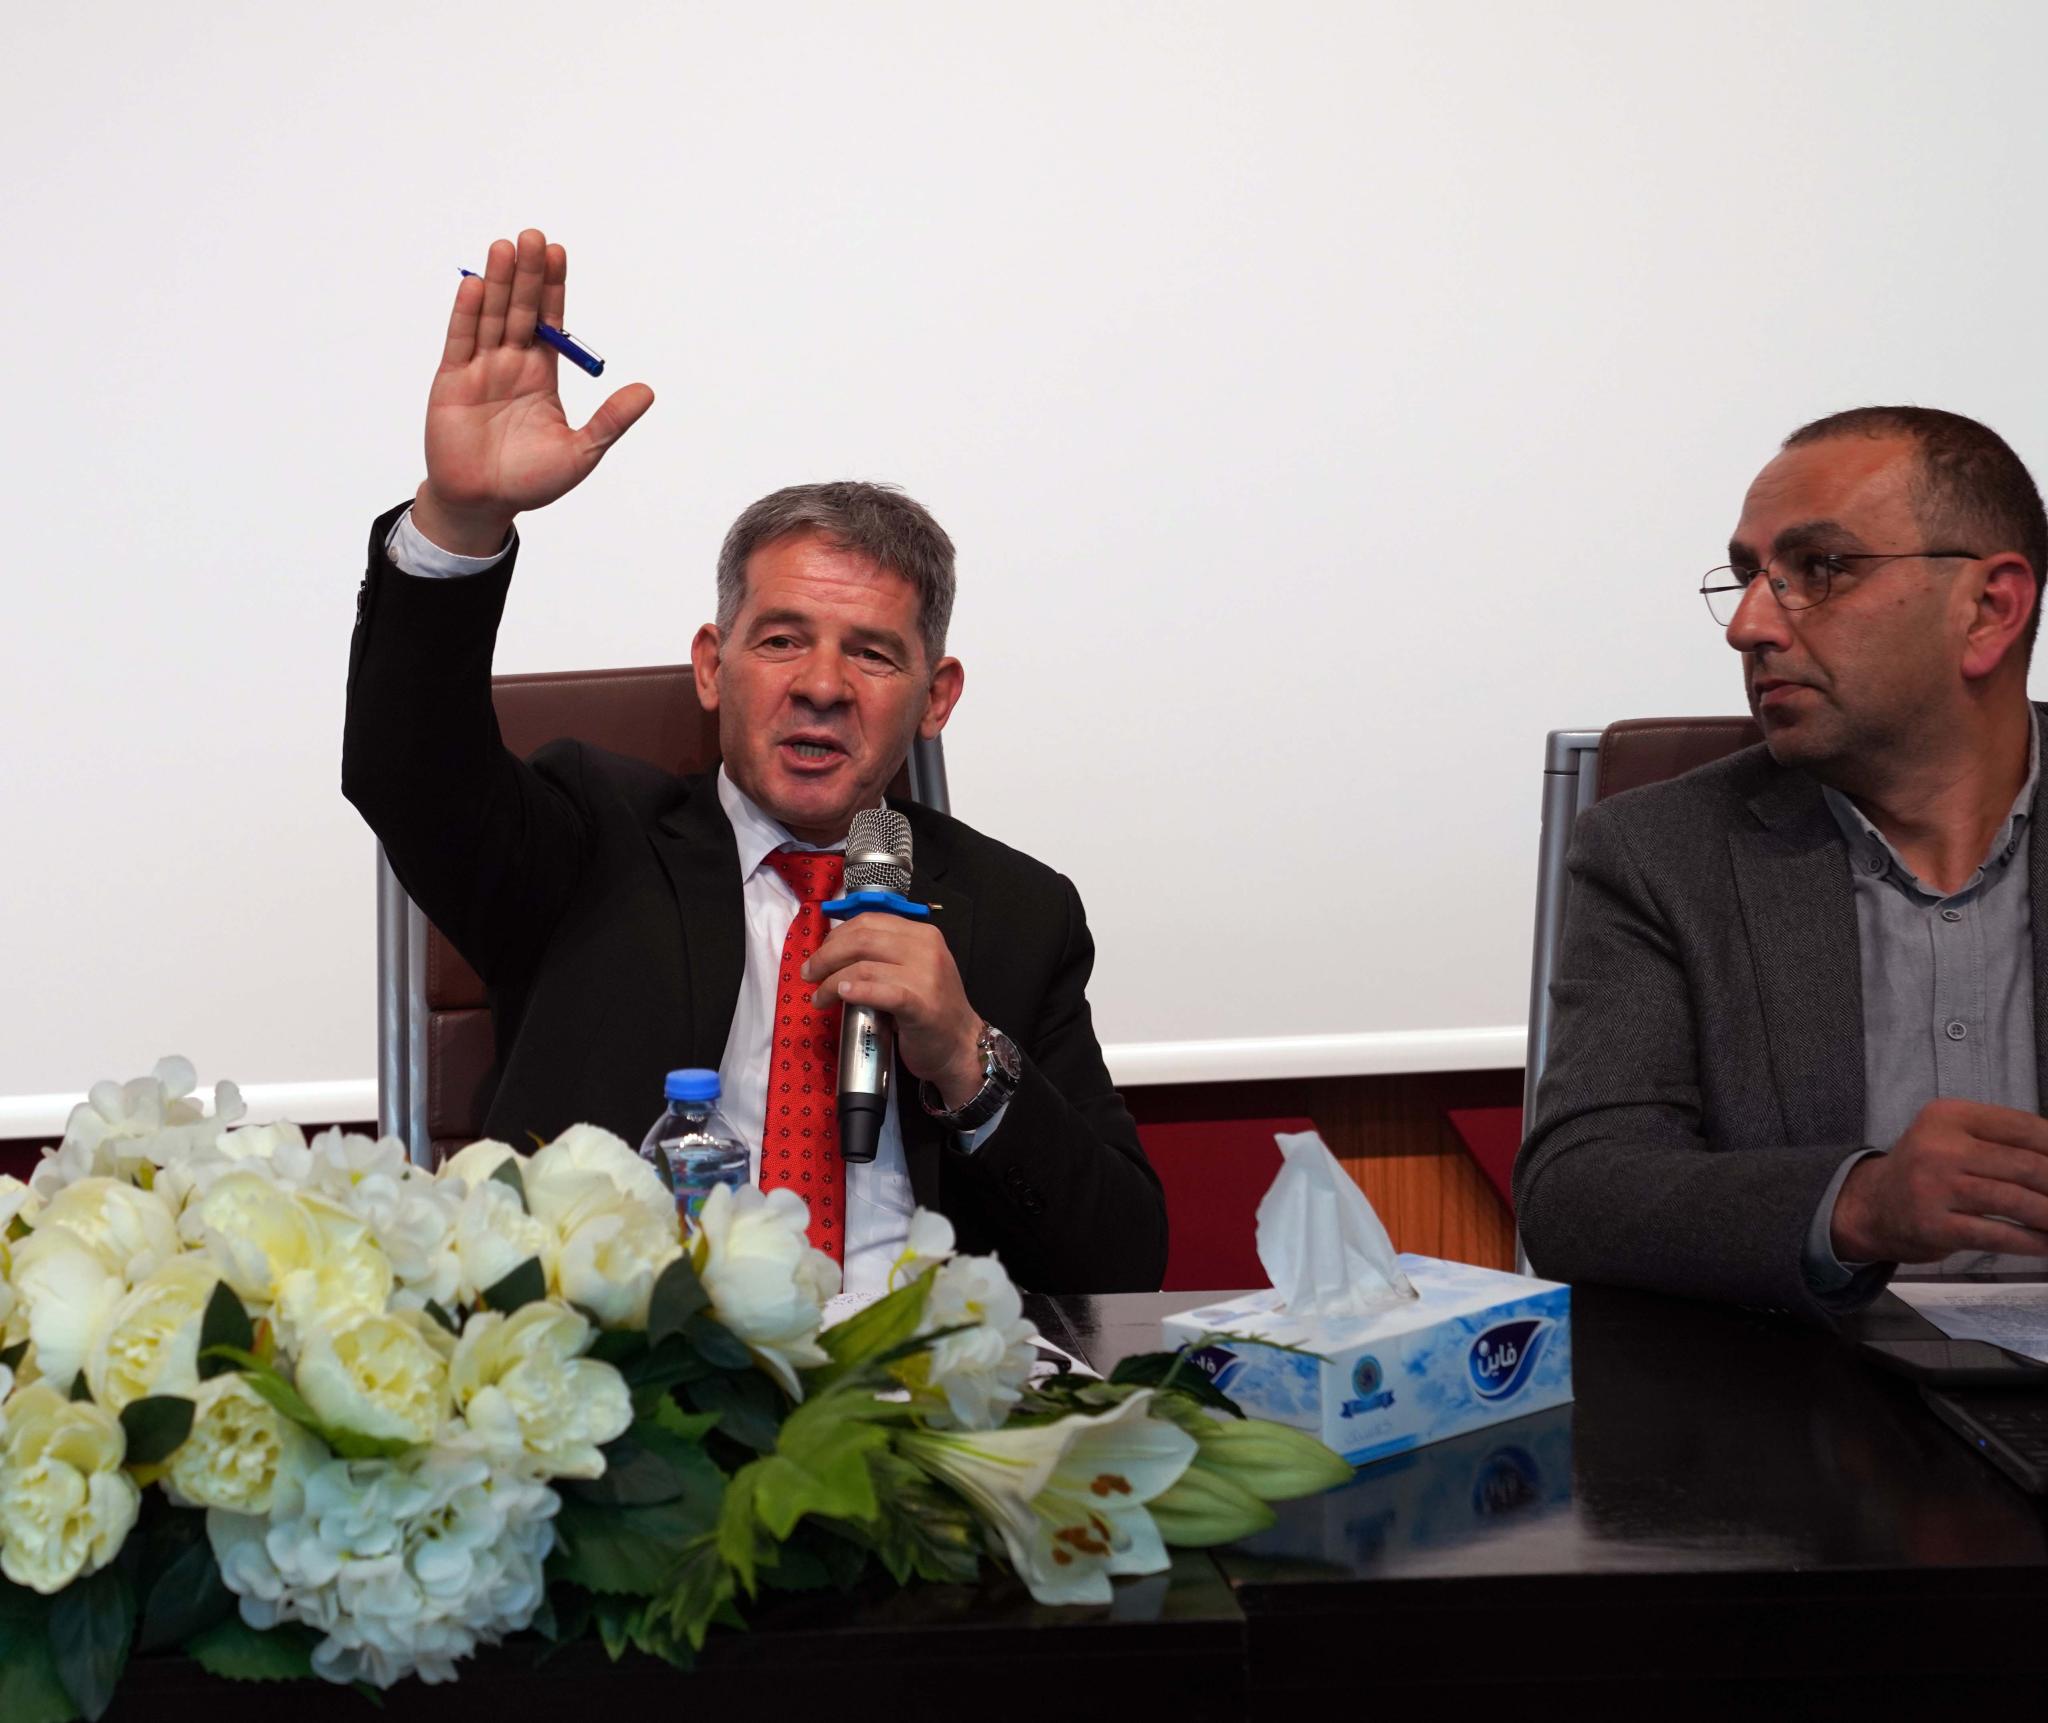 رئيس هيئة مكافحة الفساد رائد رضوان في زيارة للجامعة العربية الأمريكية